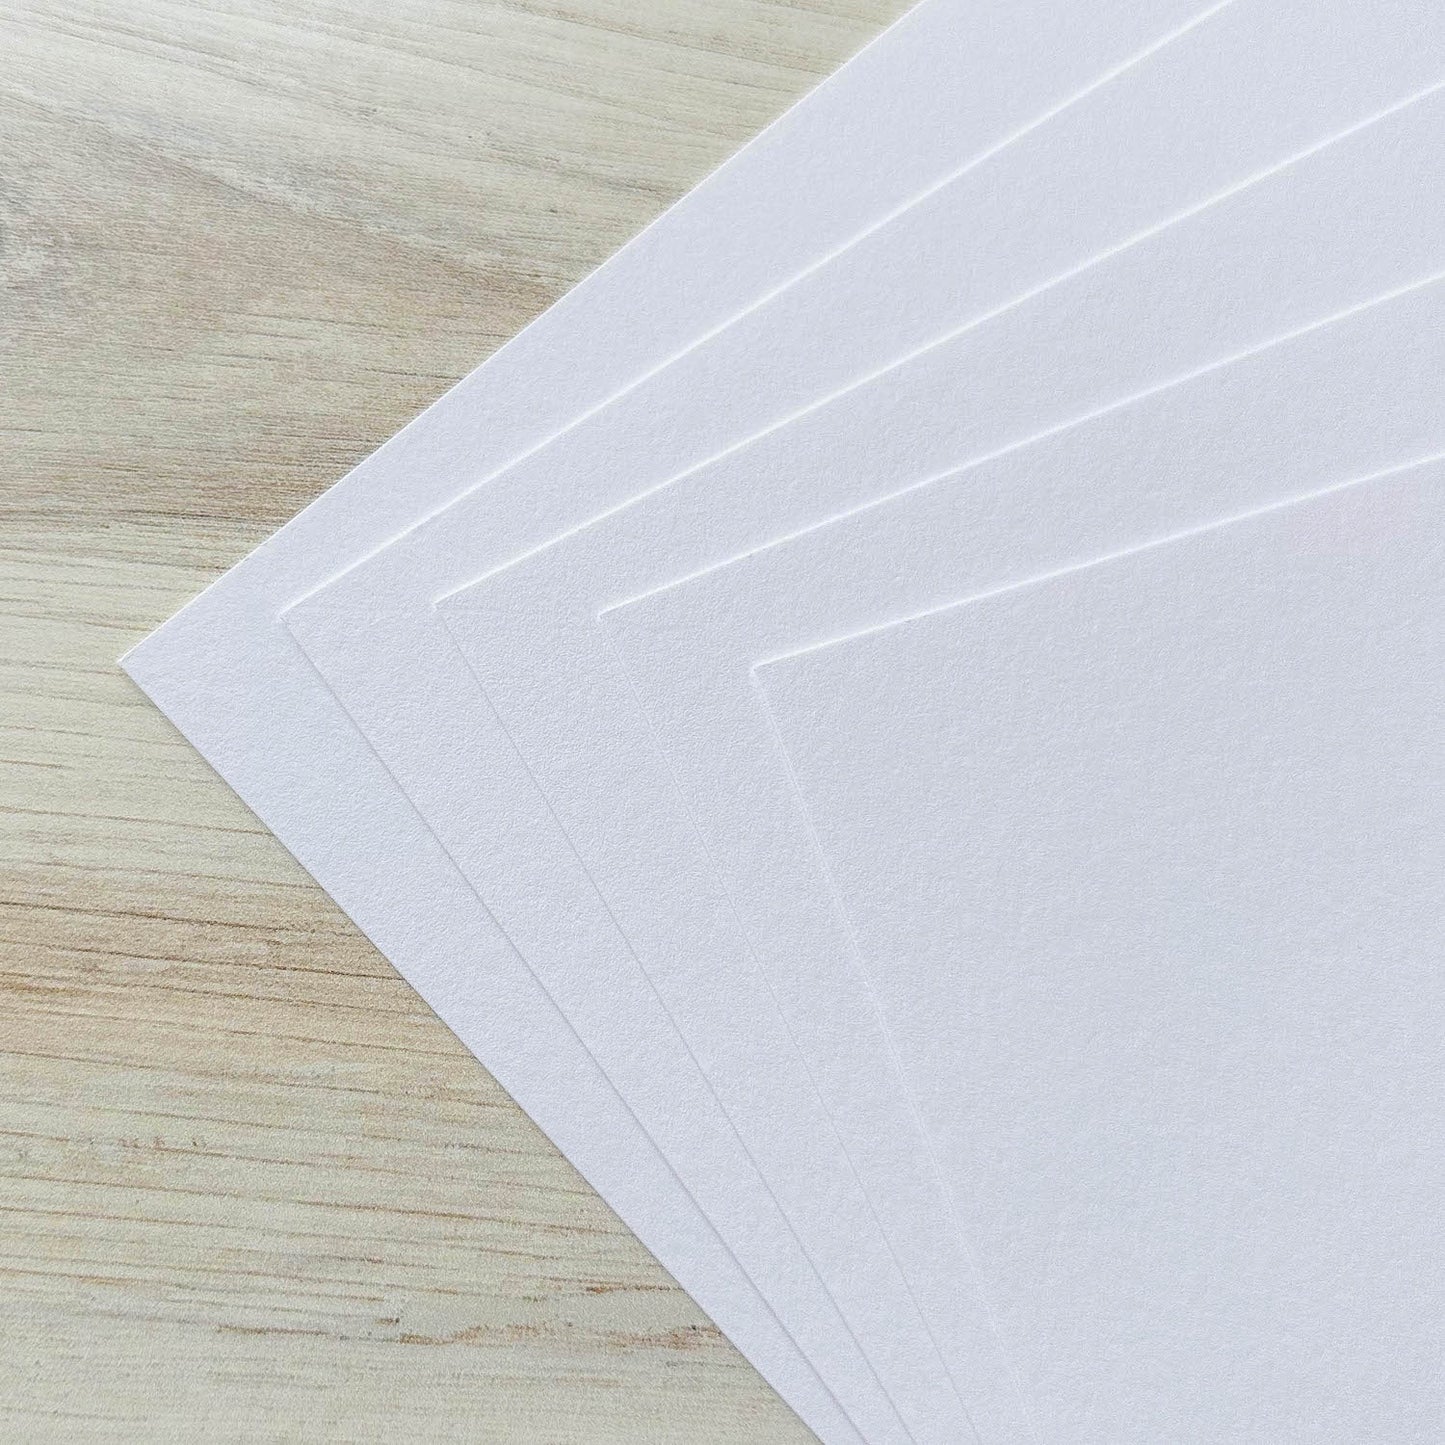 Lettra 100% Cotton Fluorescent White Paper